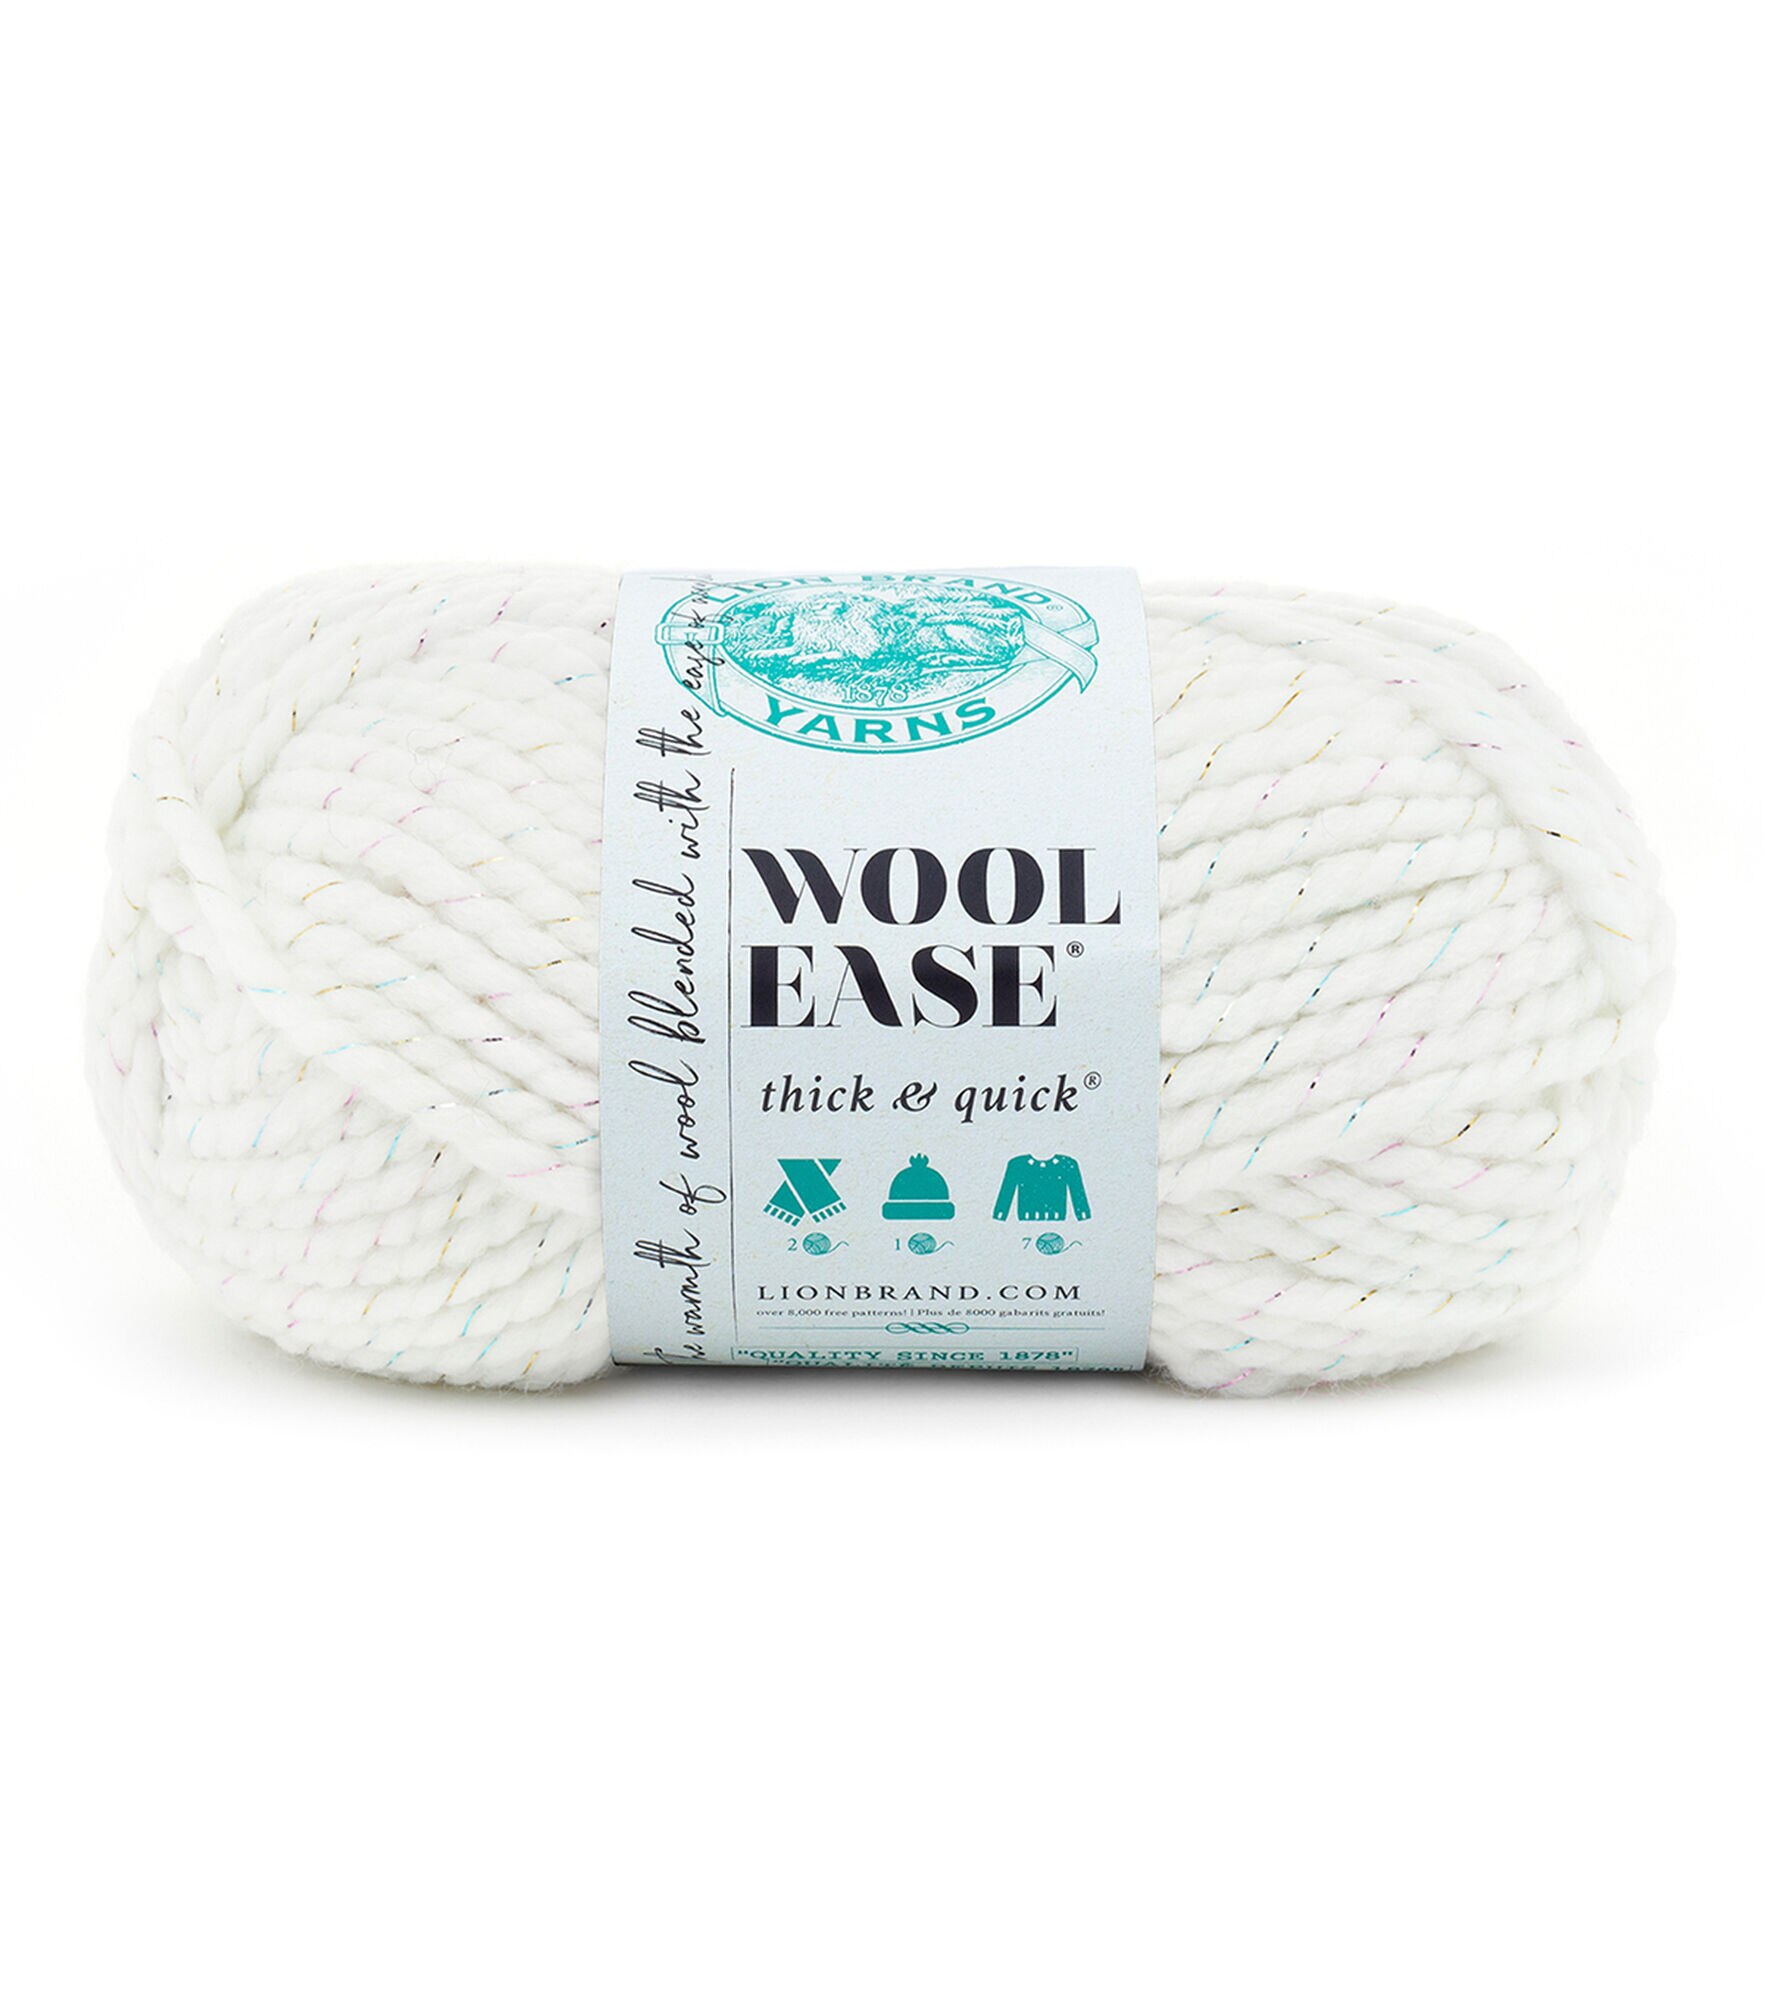 Lion Brand Heartland - Yarn Review - Sweet Bee Crochet